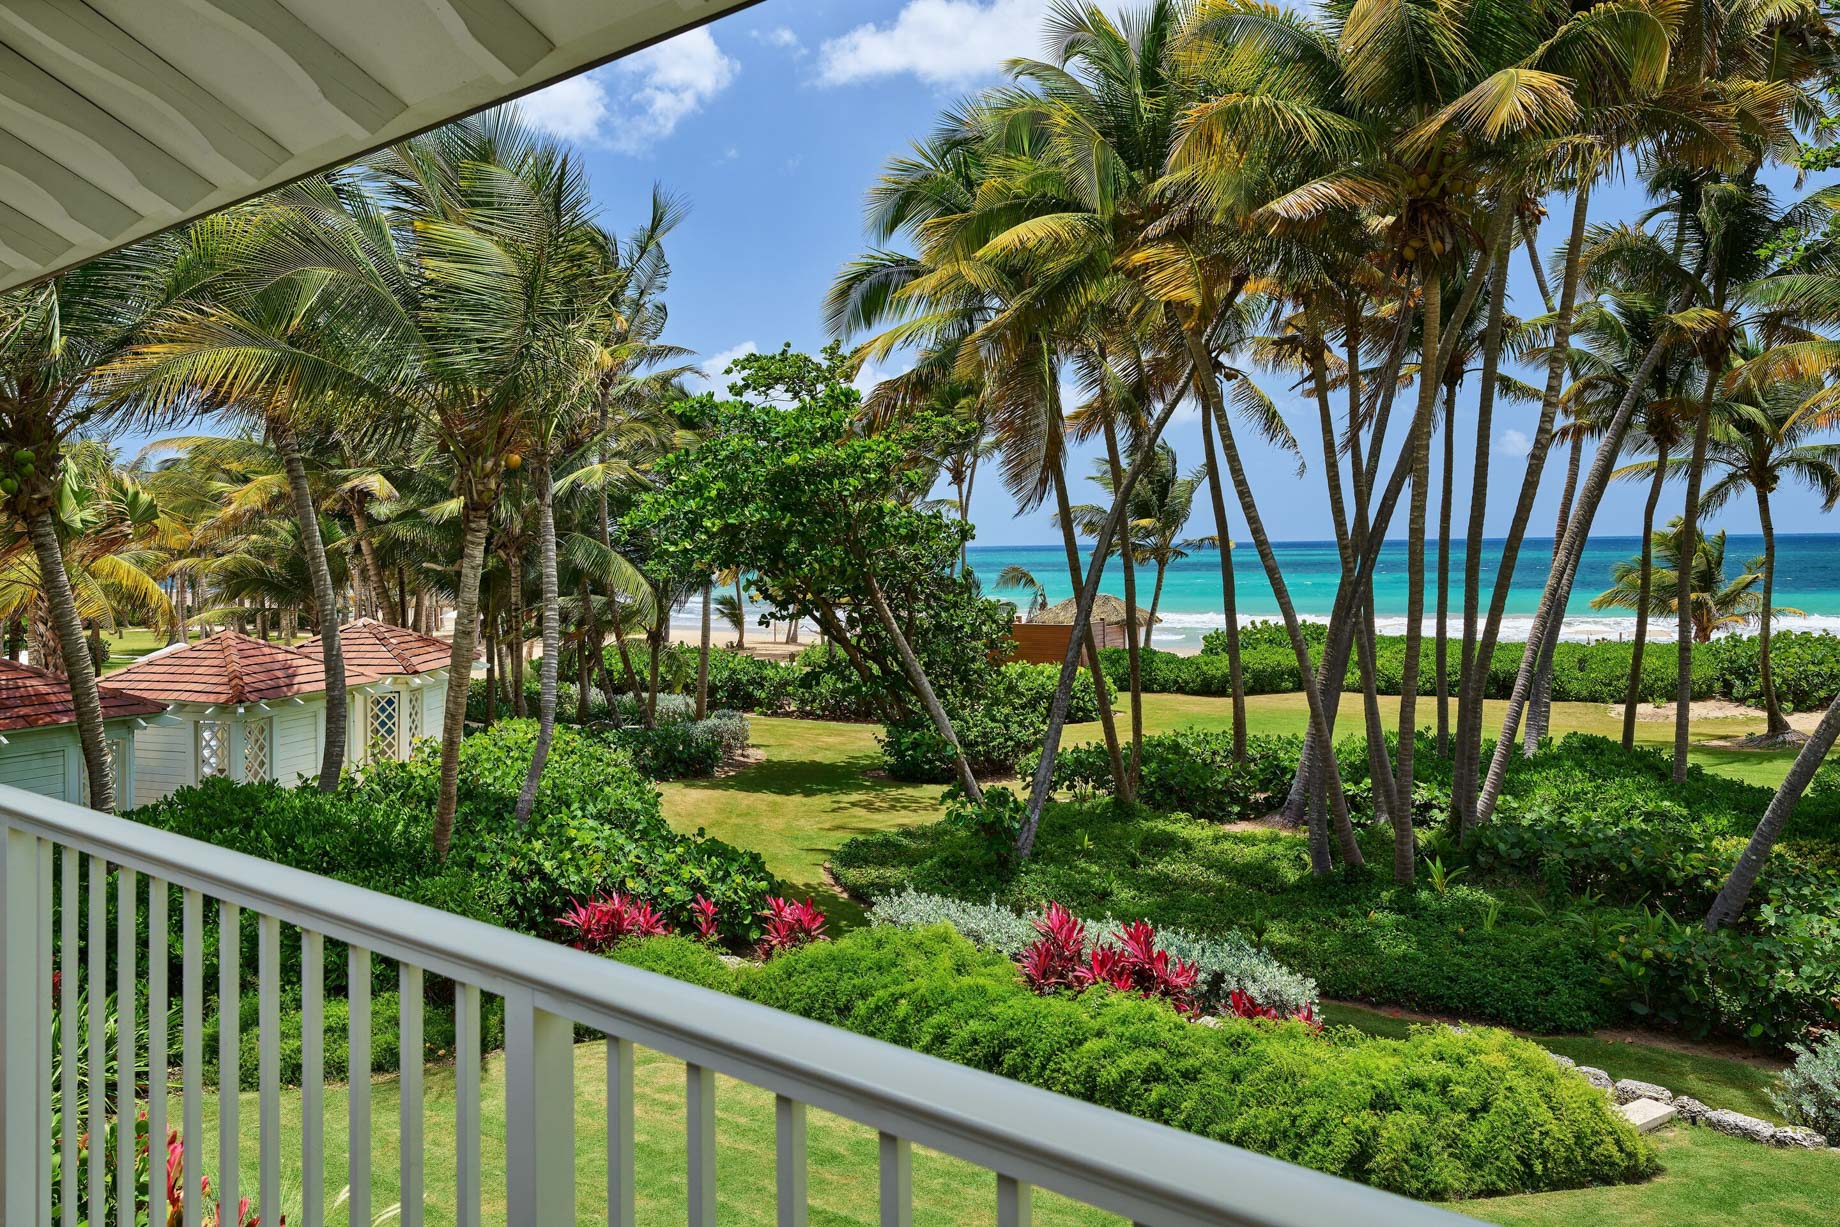 The St. Regis Bahia Beach Resort – Rio Grande, Puerto Rico – Ocean Front Guest Room Balcony